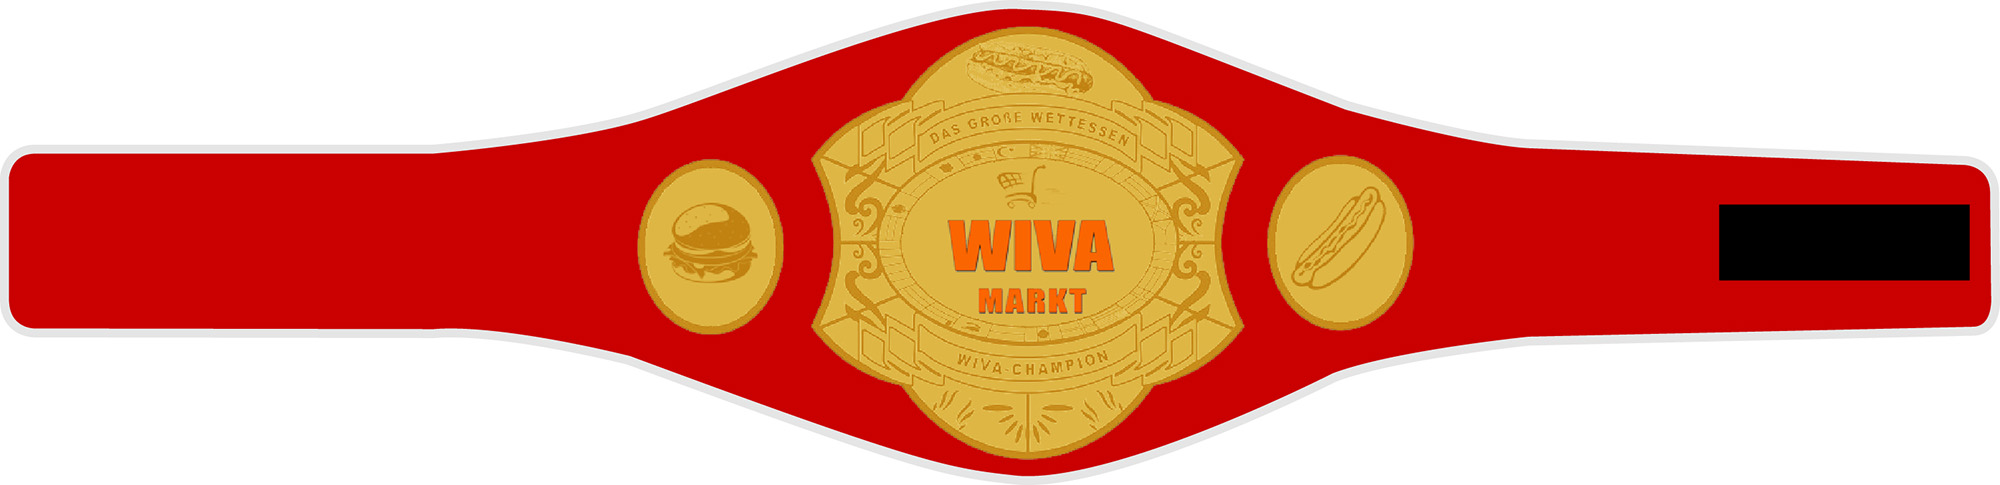 WIVA Markt Wettessen Eat Competition Hotdog Burger Champion Grtel